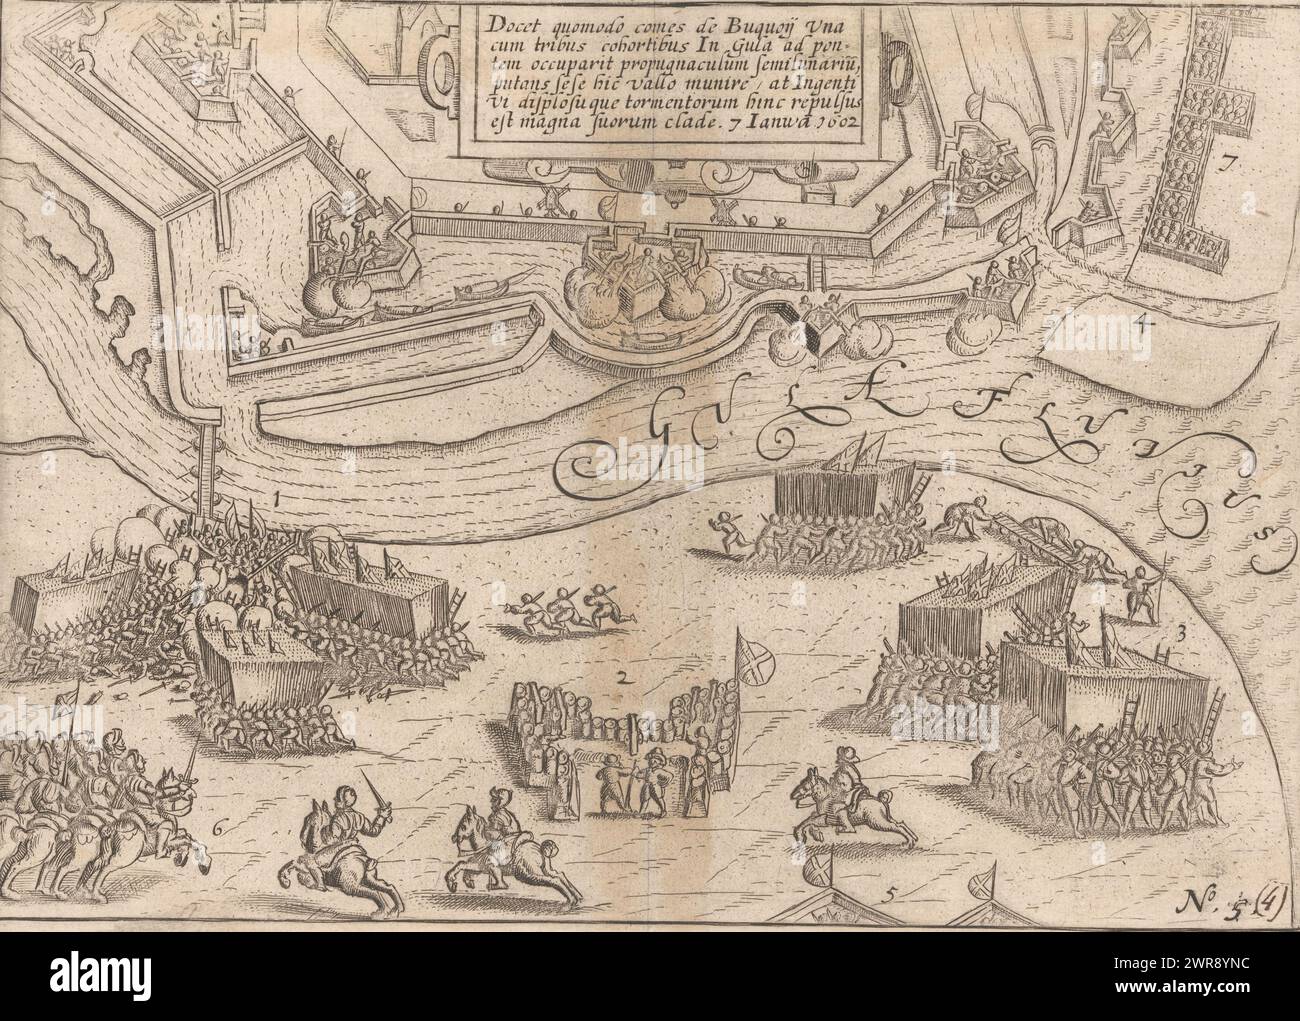 Siège d'Ostende : prise d'assaut par Bucquoy le 7 janvier 1602, Docet quomodo Comes de Buquoij una cum tribus cohortibus (...) (Titre sur l'objet), Siège d'Ostende : prise des défenses d'Ostende par les troupes espagnoles sous le comte de Bucquoy le 7 janvier 1602. En bas à gauche, combats à la lunette de l'autre côté de la rivière Geule, en haut au centre un cartouche avec une inscription en latin. Numéroté en bas à droite : 5., imprimeur : anonyme, imprimeur : Baptista van Doetechum, (éventuellement), 1602 - 1604 et/ou 1615, papier, gravure, gravure, hauteur 170 mm × largeur 241 mm Banque D'Images